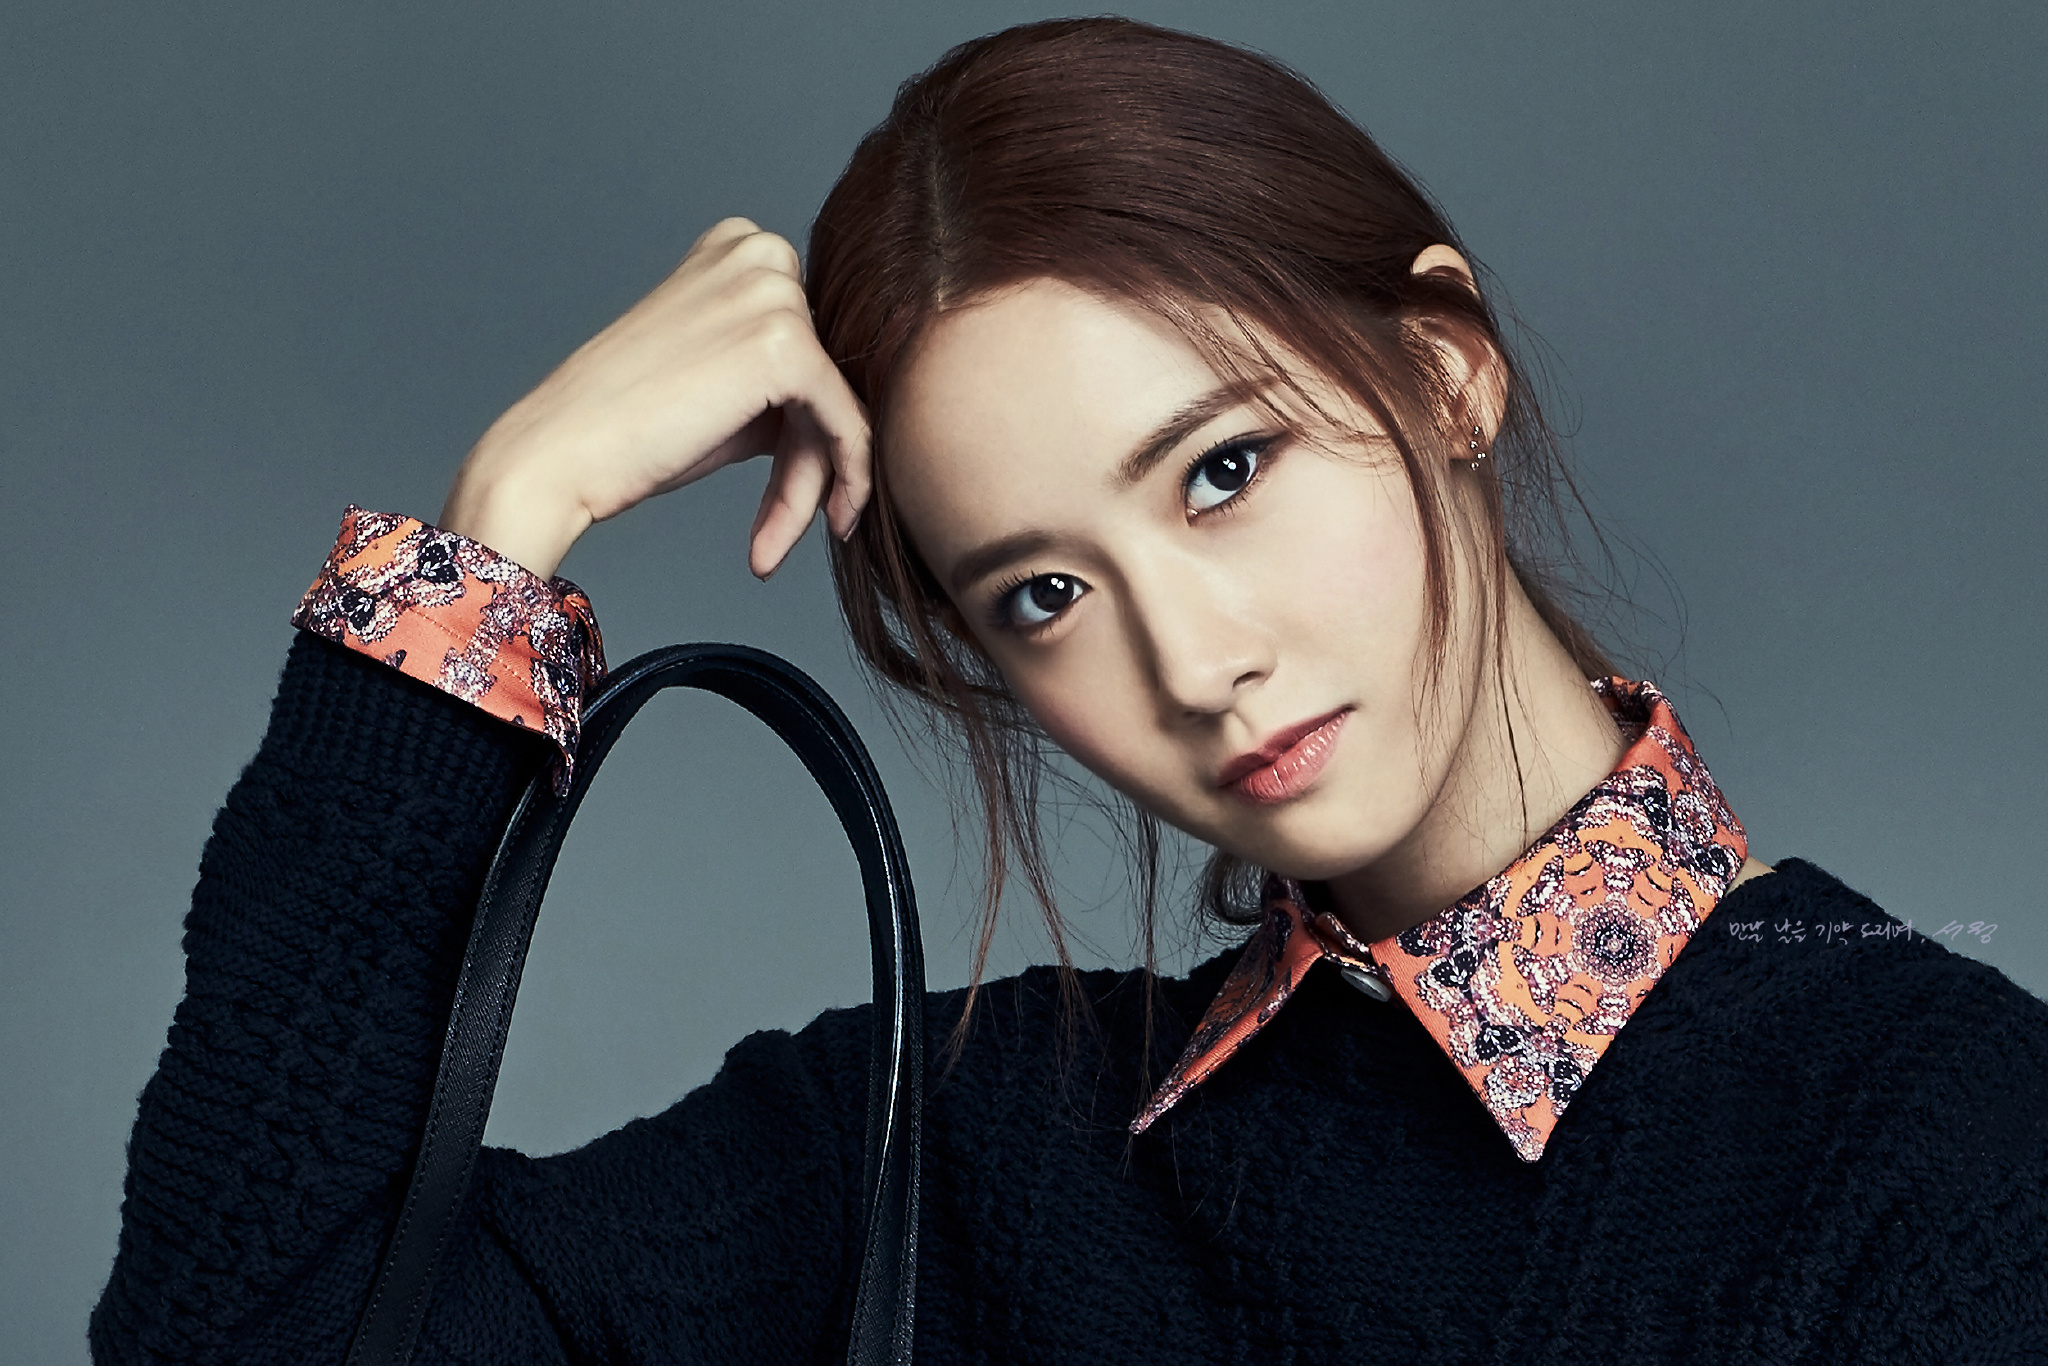 [OTHER][12-08-2015]YoonA trở thành người mẫu mới cho thương hiệu túi xách "LOVCAT" - Page 2 6964db43gw1exuvv0uyprj21kw11xkj4